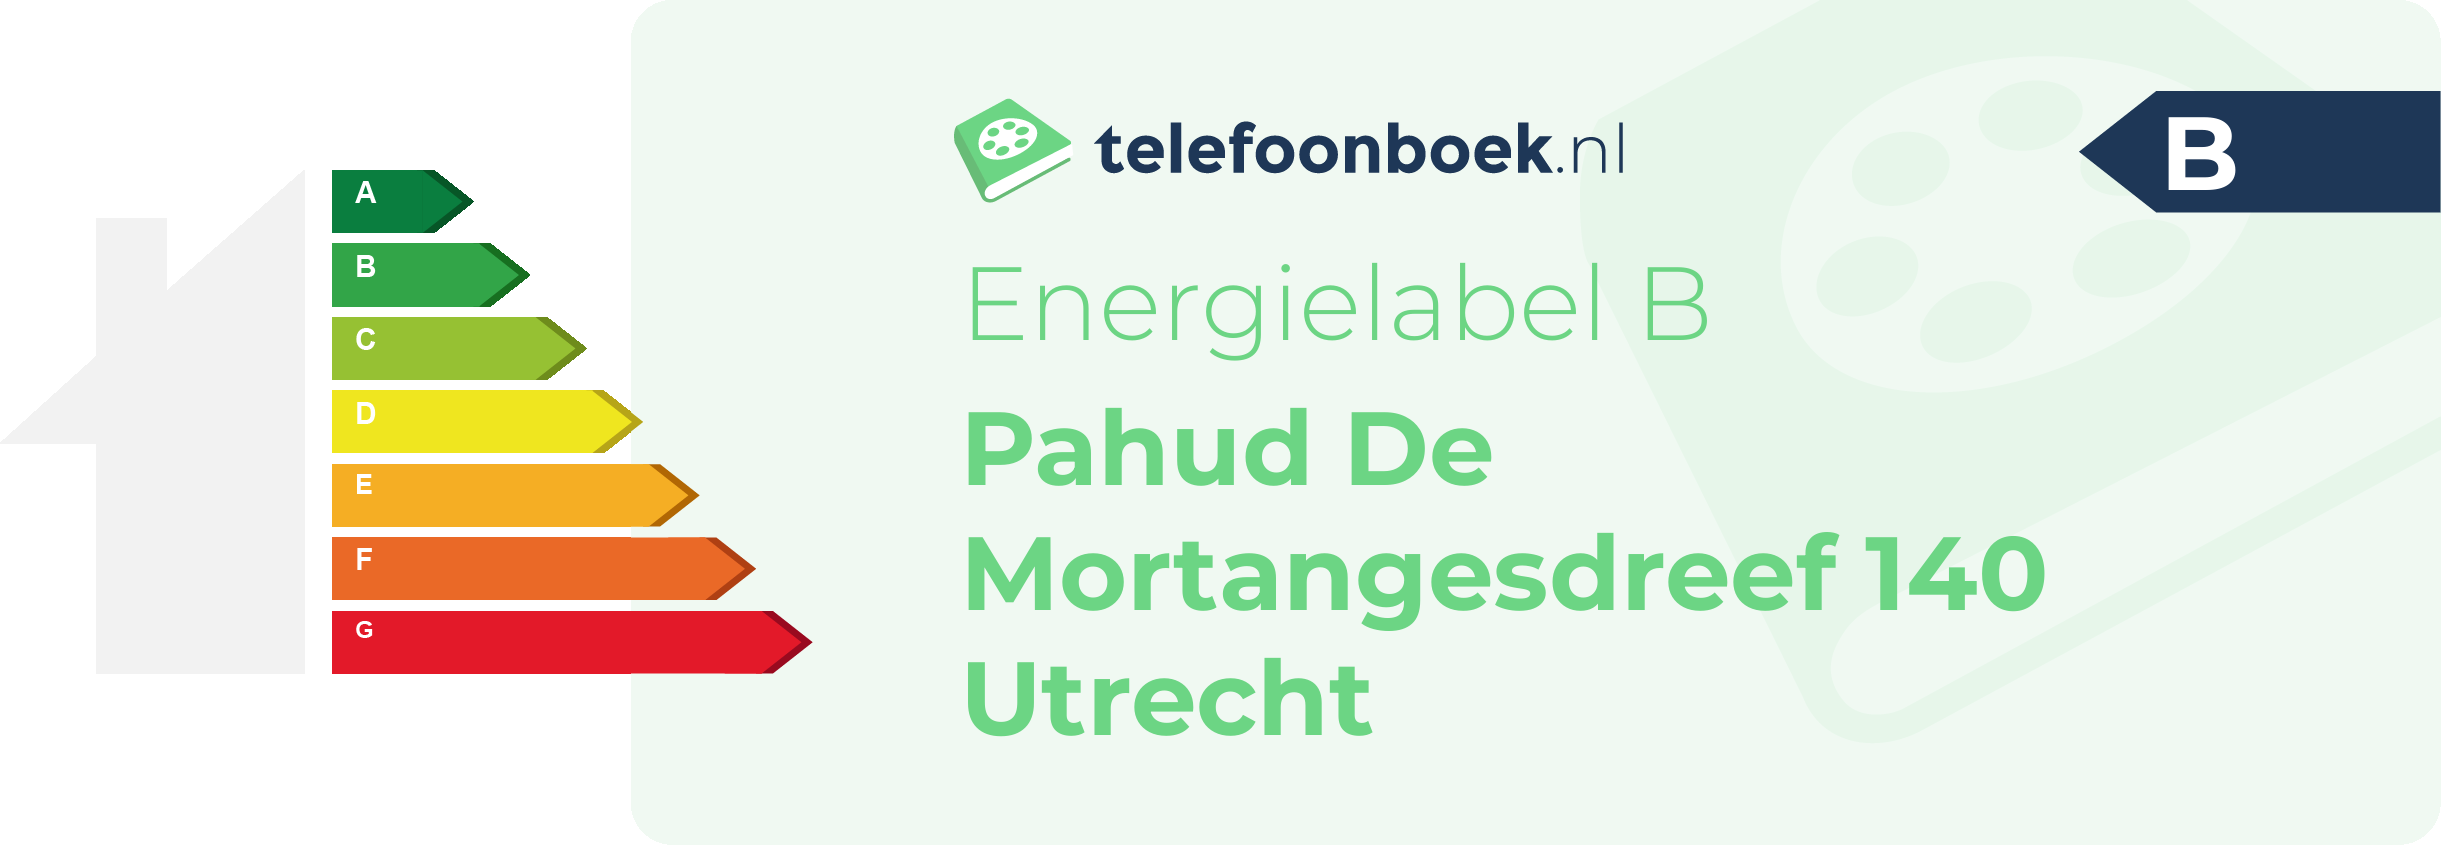 Energielabel Pahud De Mortangesdreef 140 Utrecht